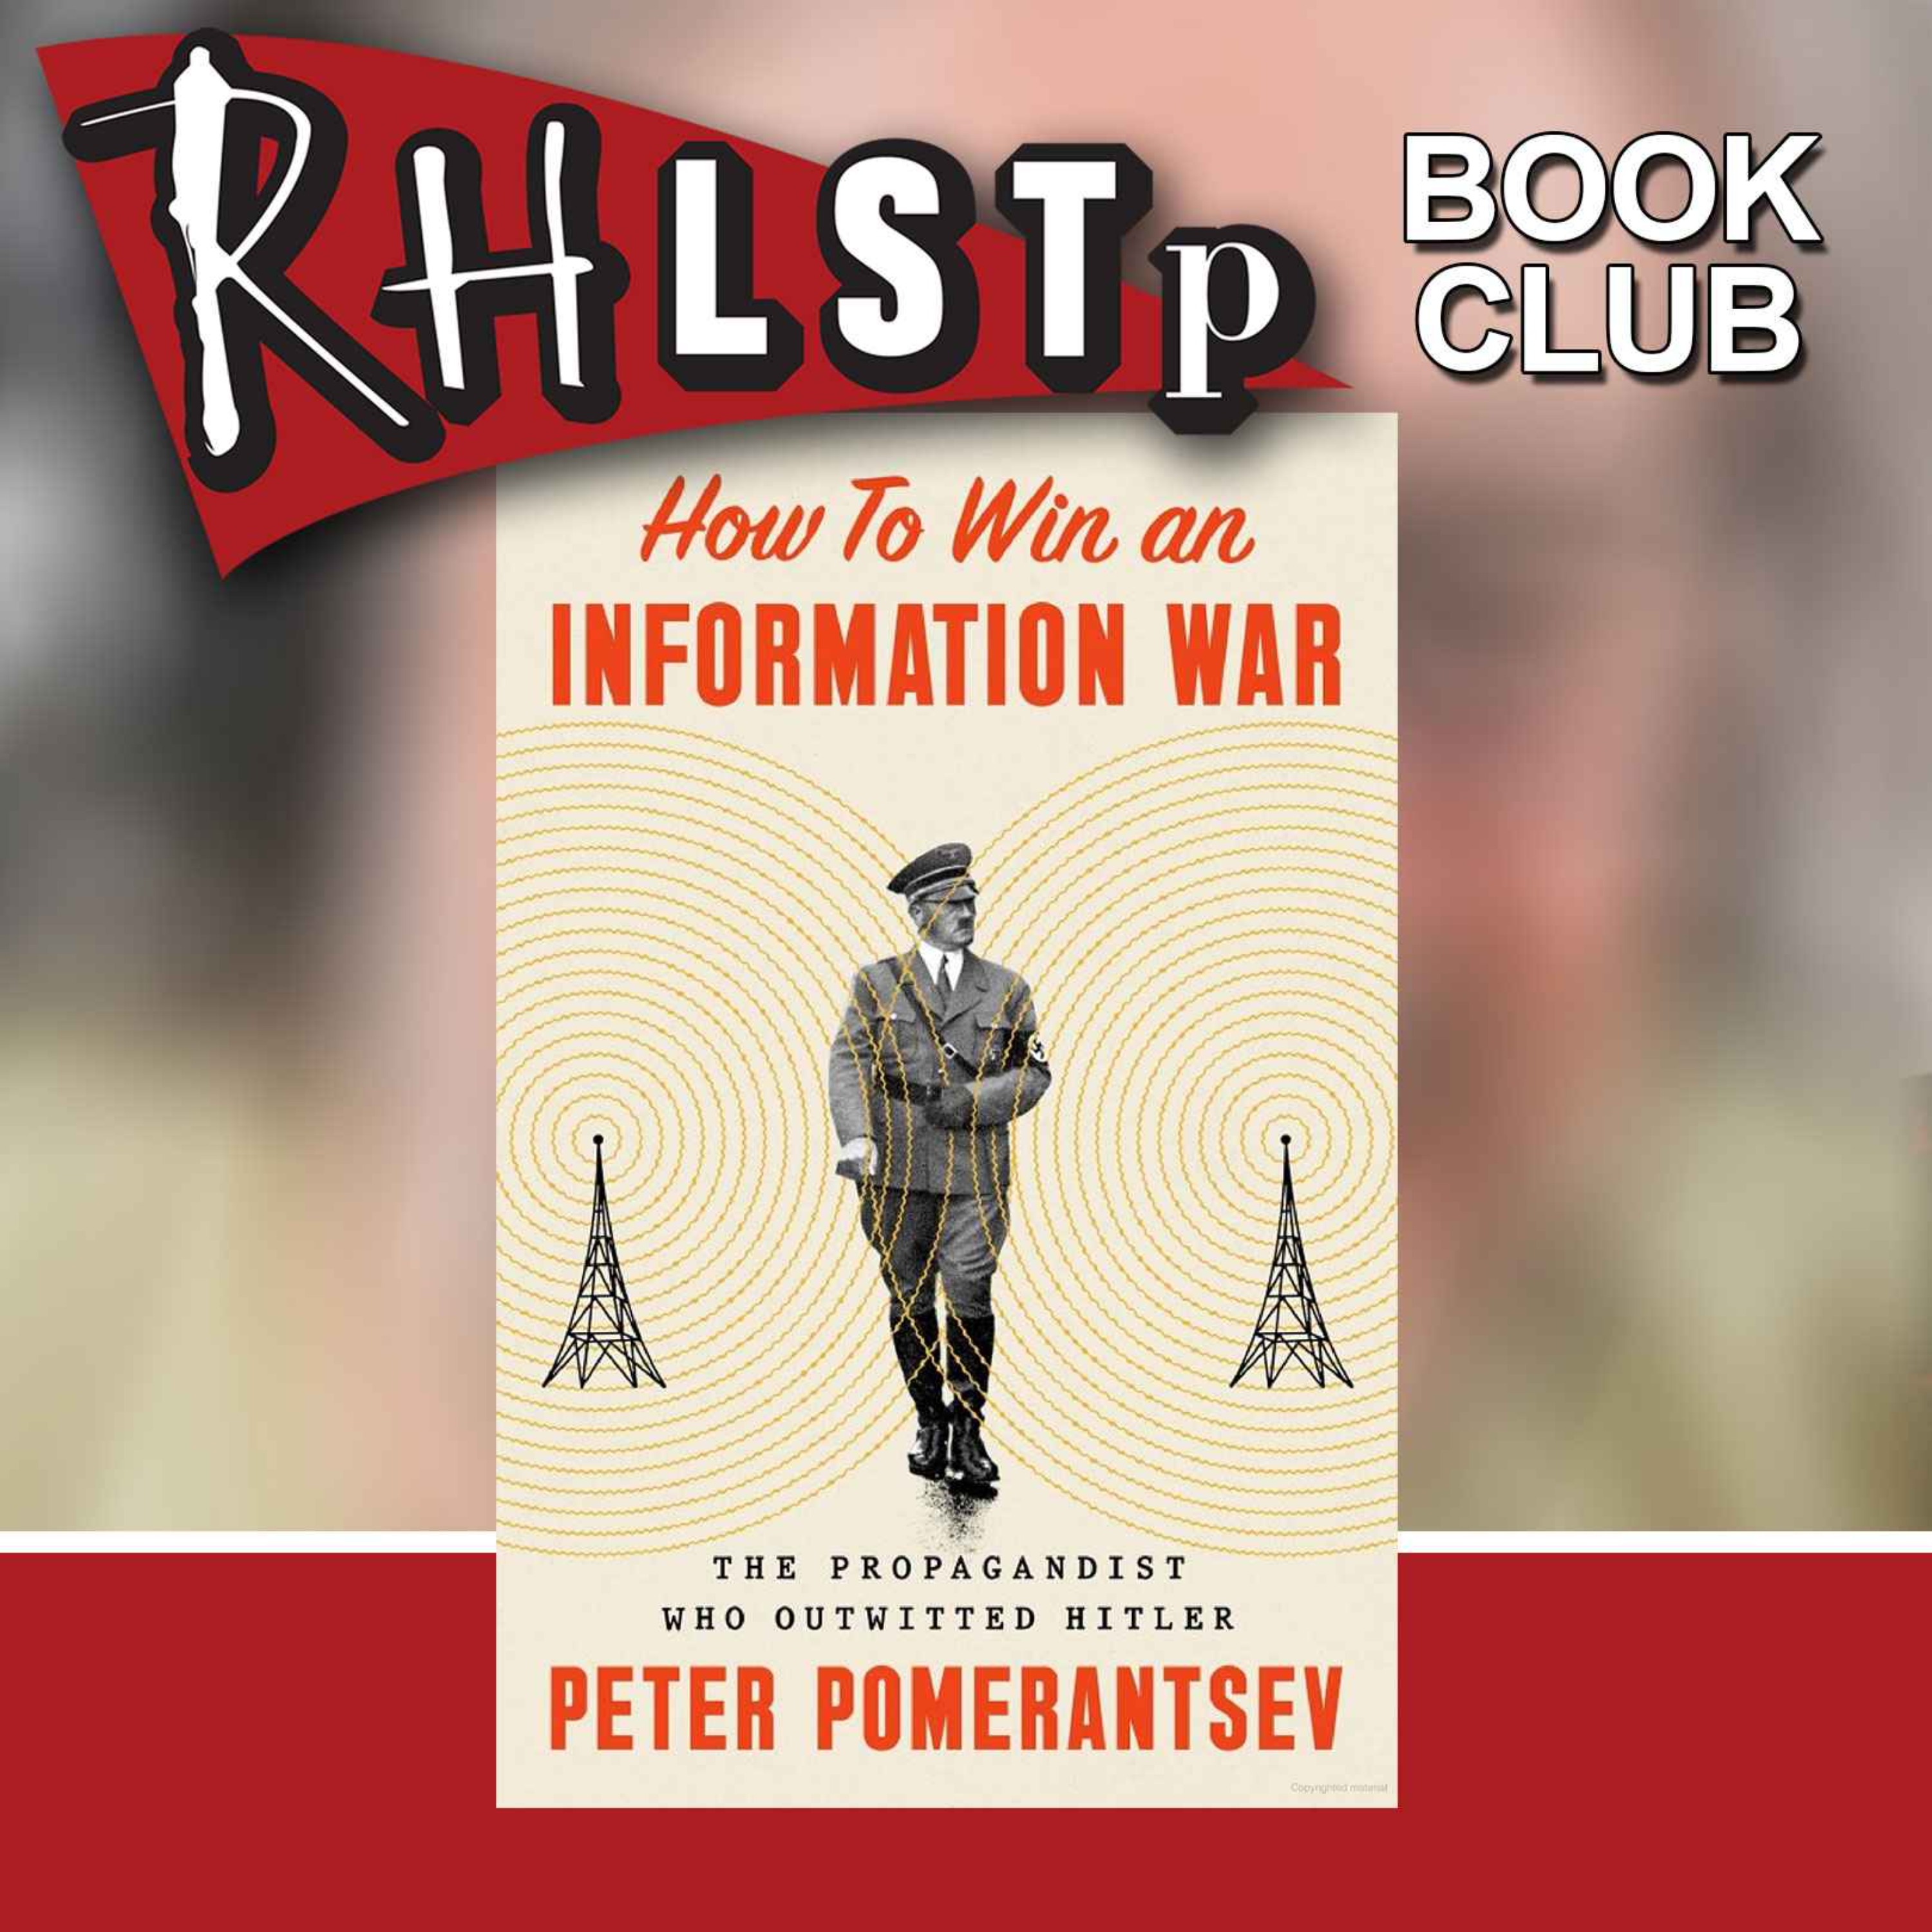 RHLSTP Book Club 97 - Peter Pomerantsev